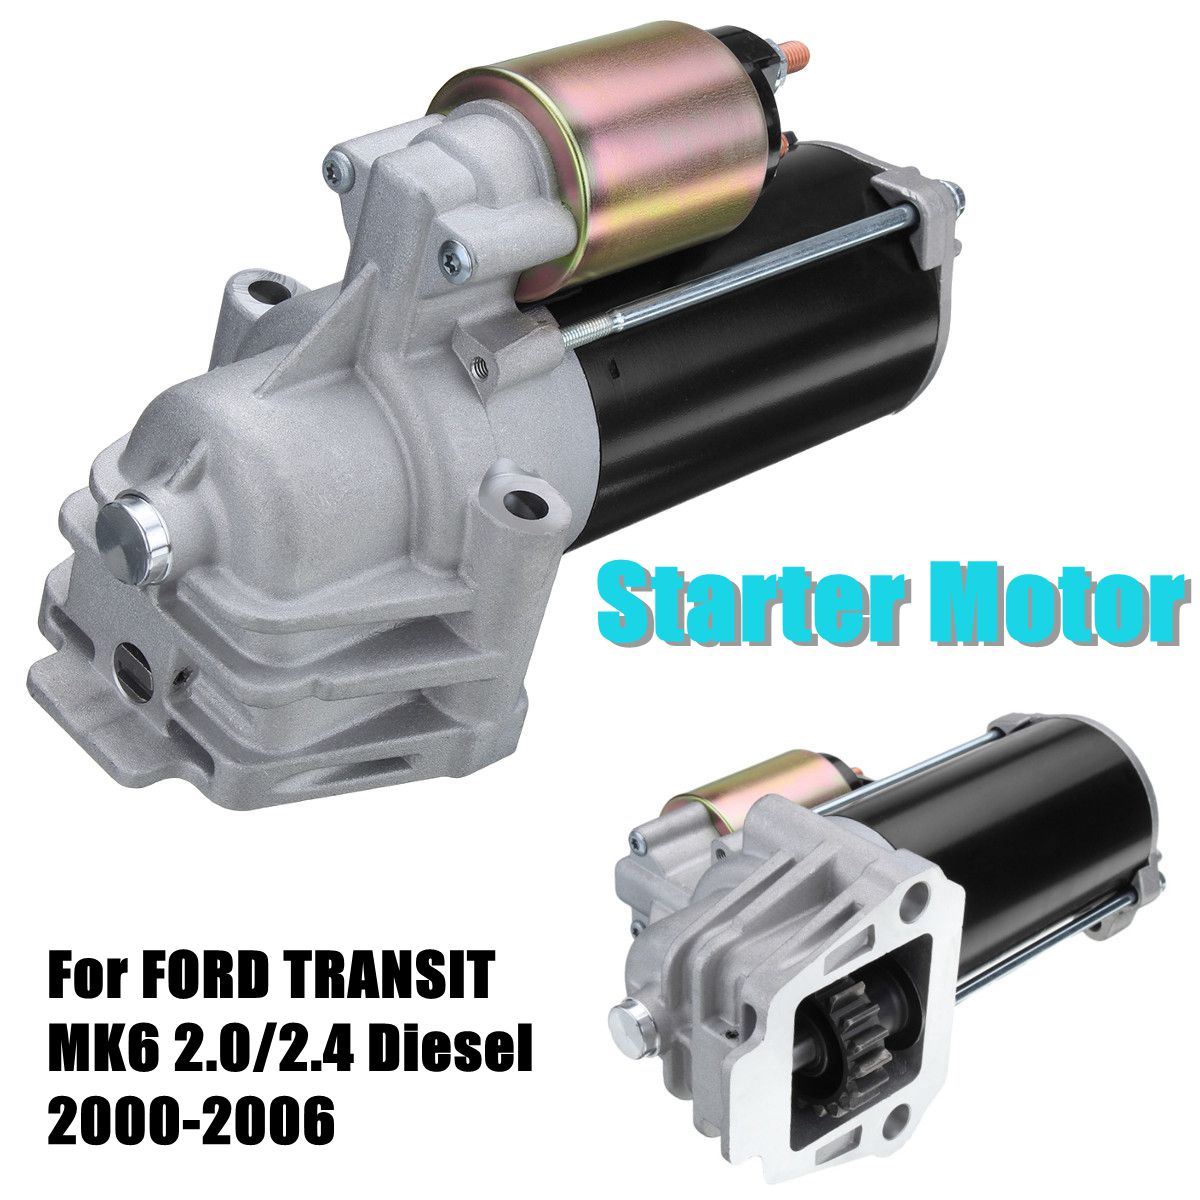 

Starter Motor Parts For FORD TRANSIT MK6 2.0/2.4 Diesel 2000-2006 Kits